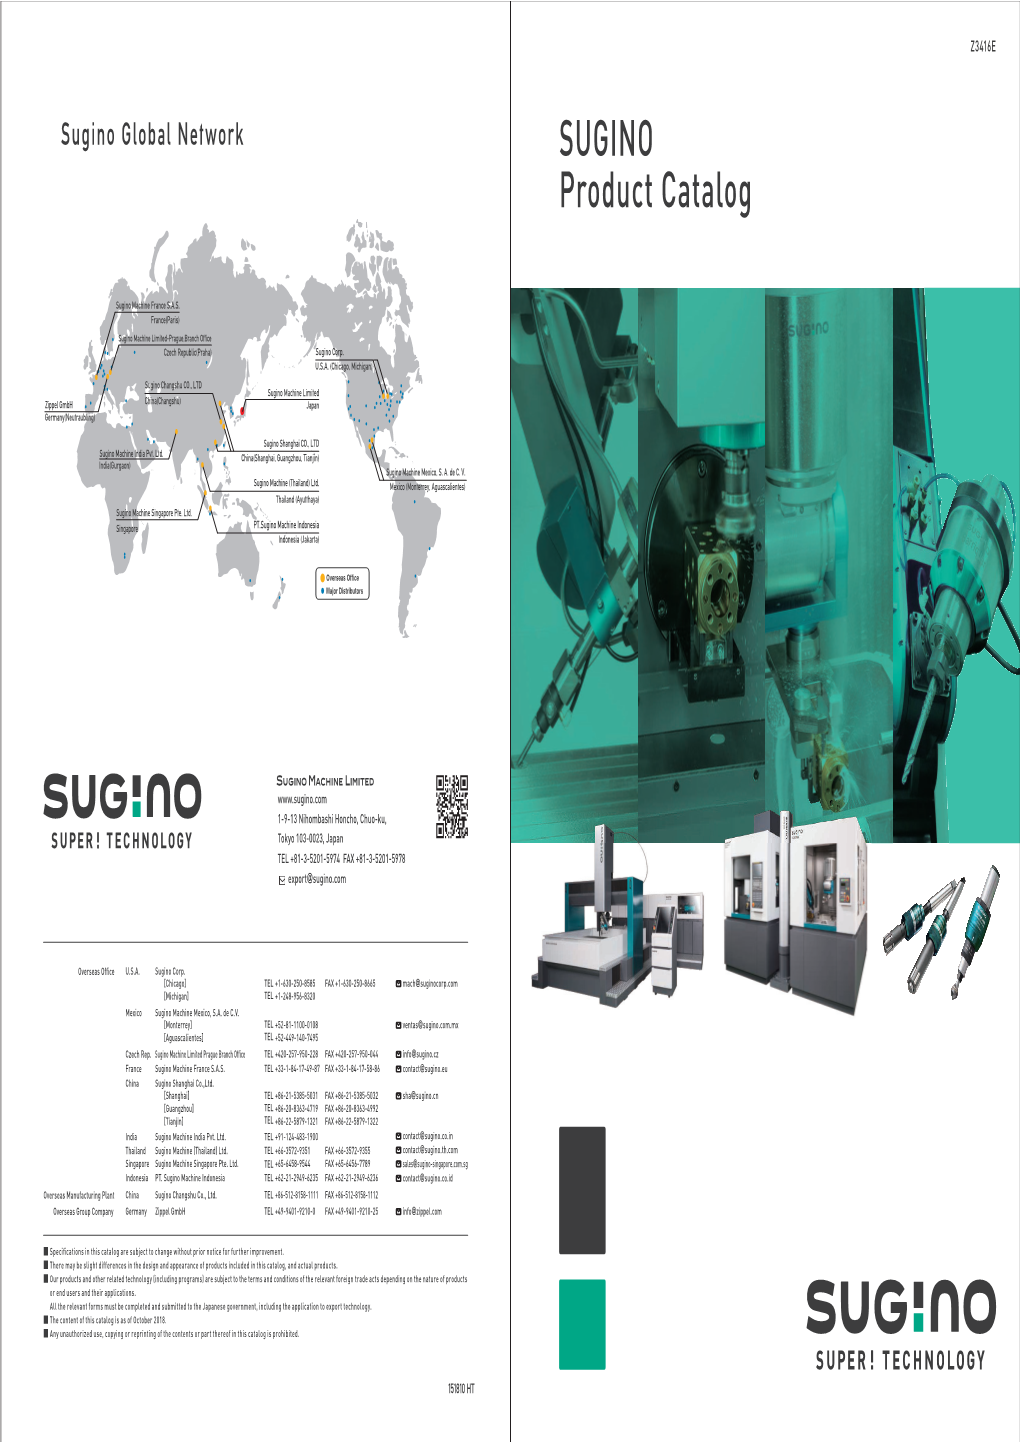 SUGINO Product Catalog